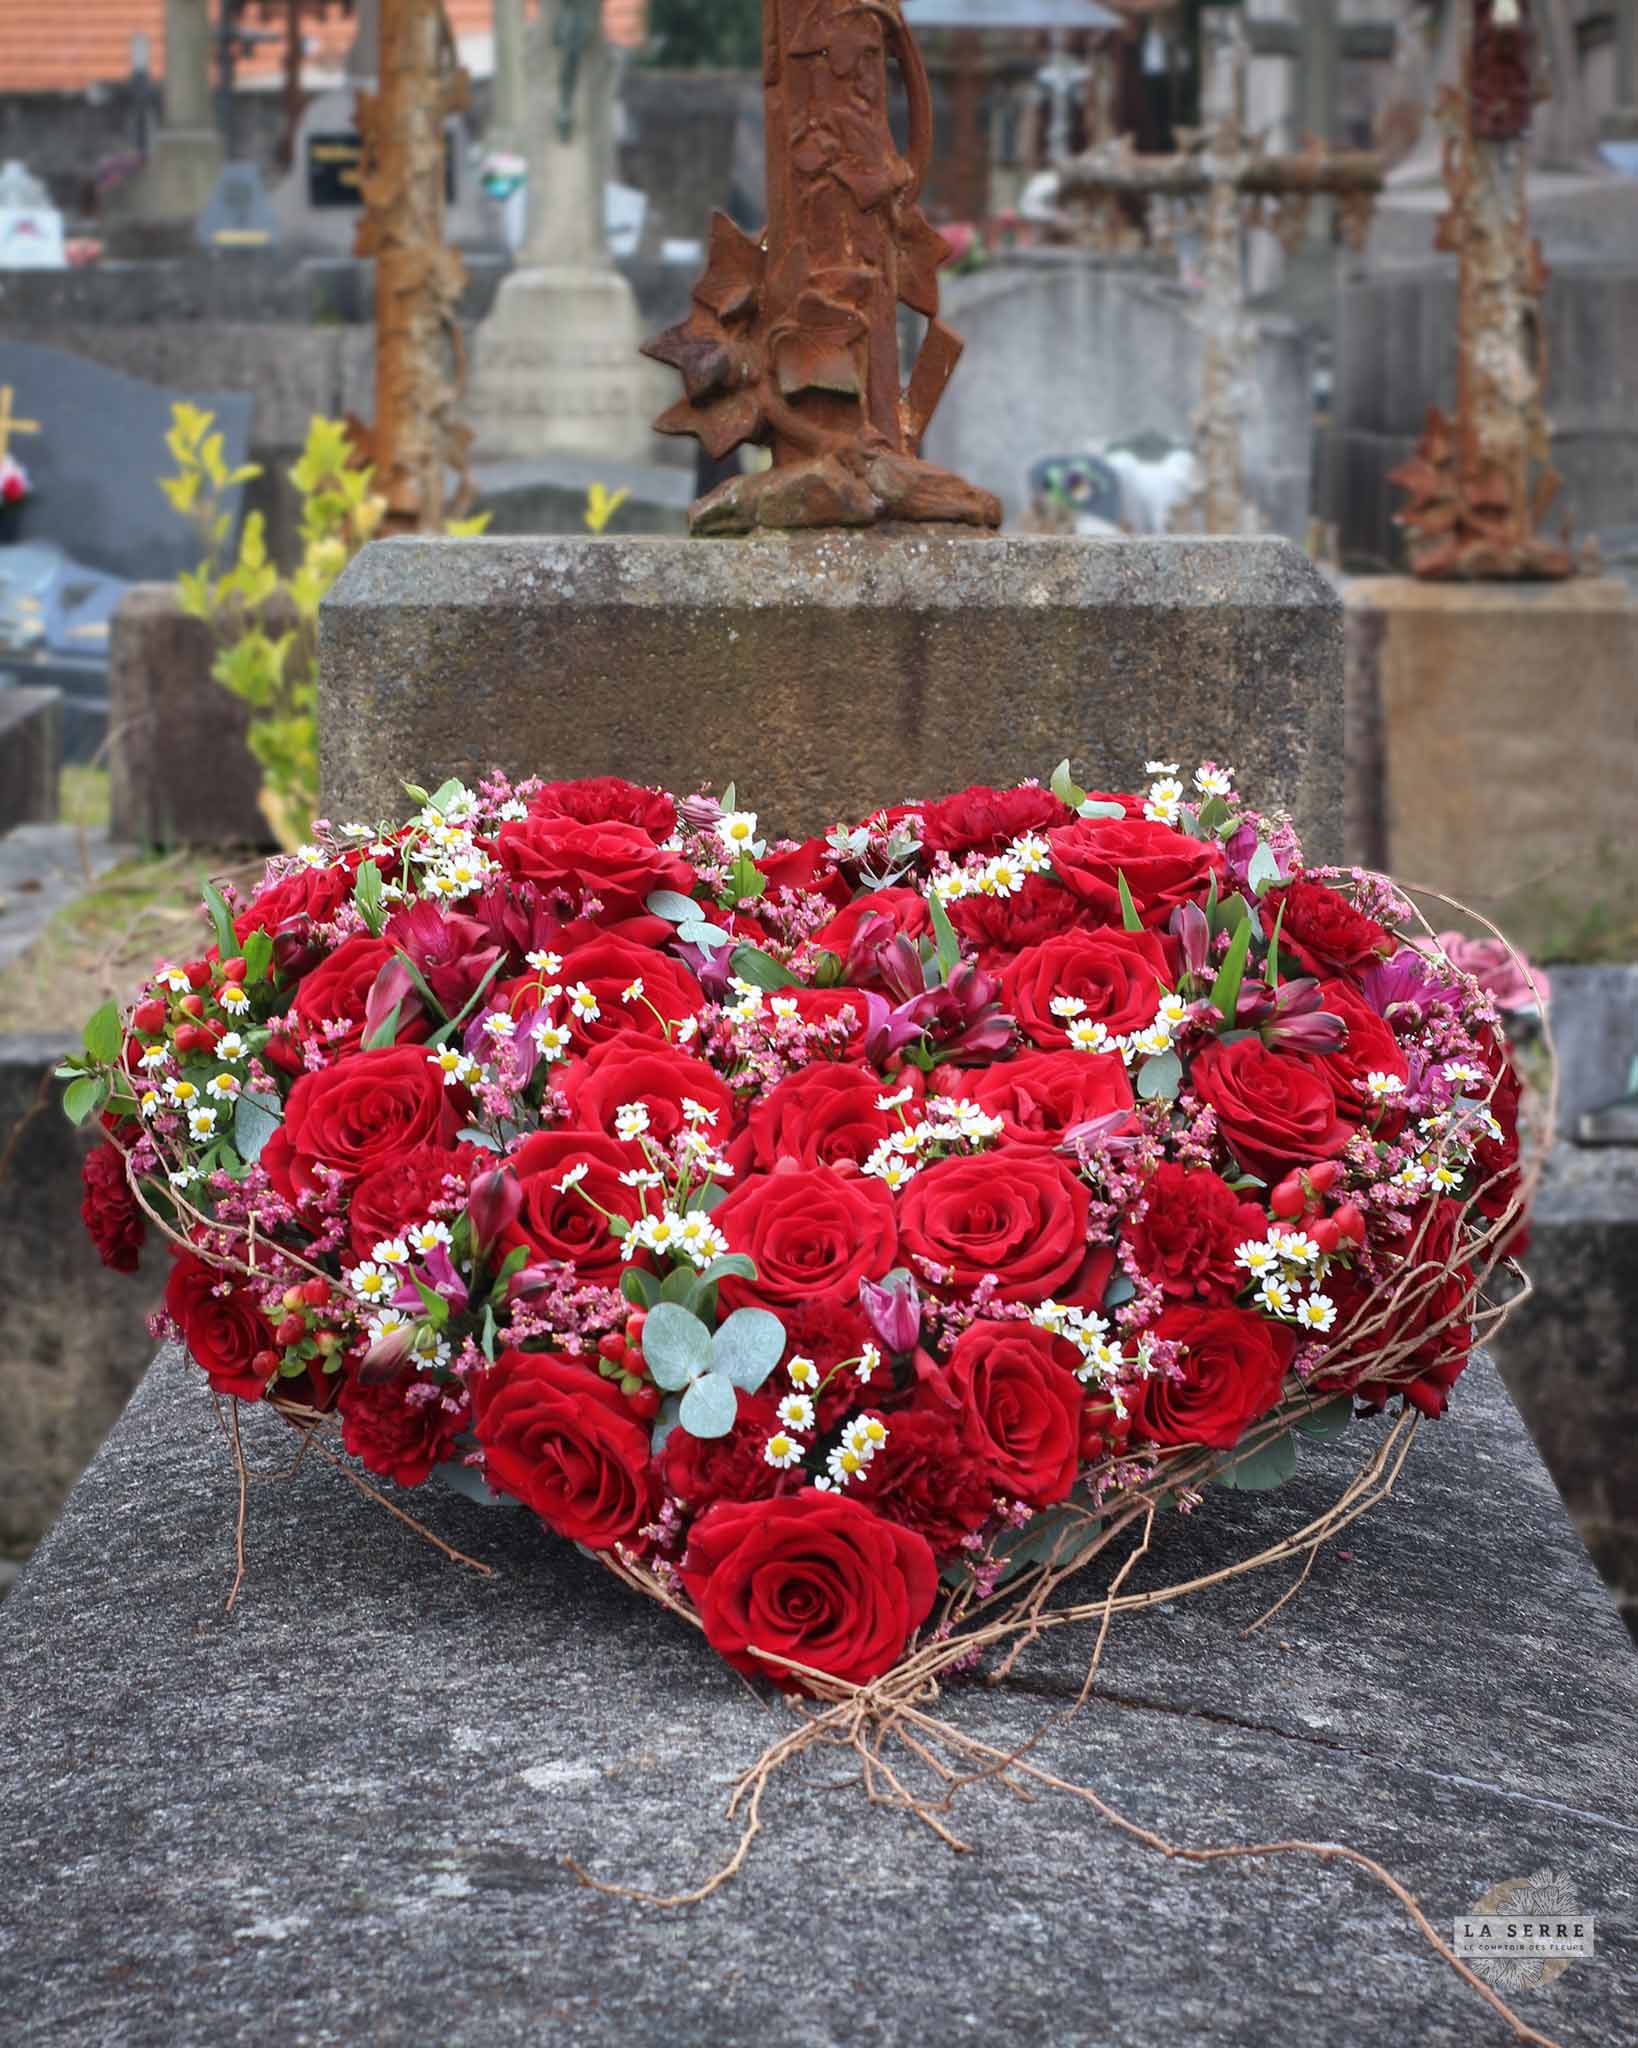 Coussin coeur deuil. Composition florale pour un enterrement. Livraison rapide à Nantes et sa périphérie. LA SERRE fleuriste Nantes